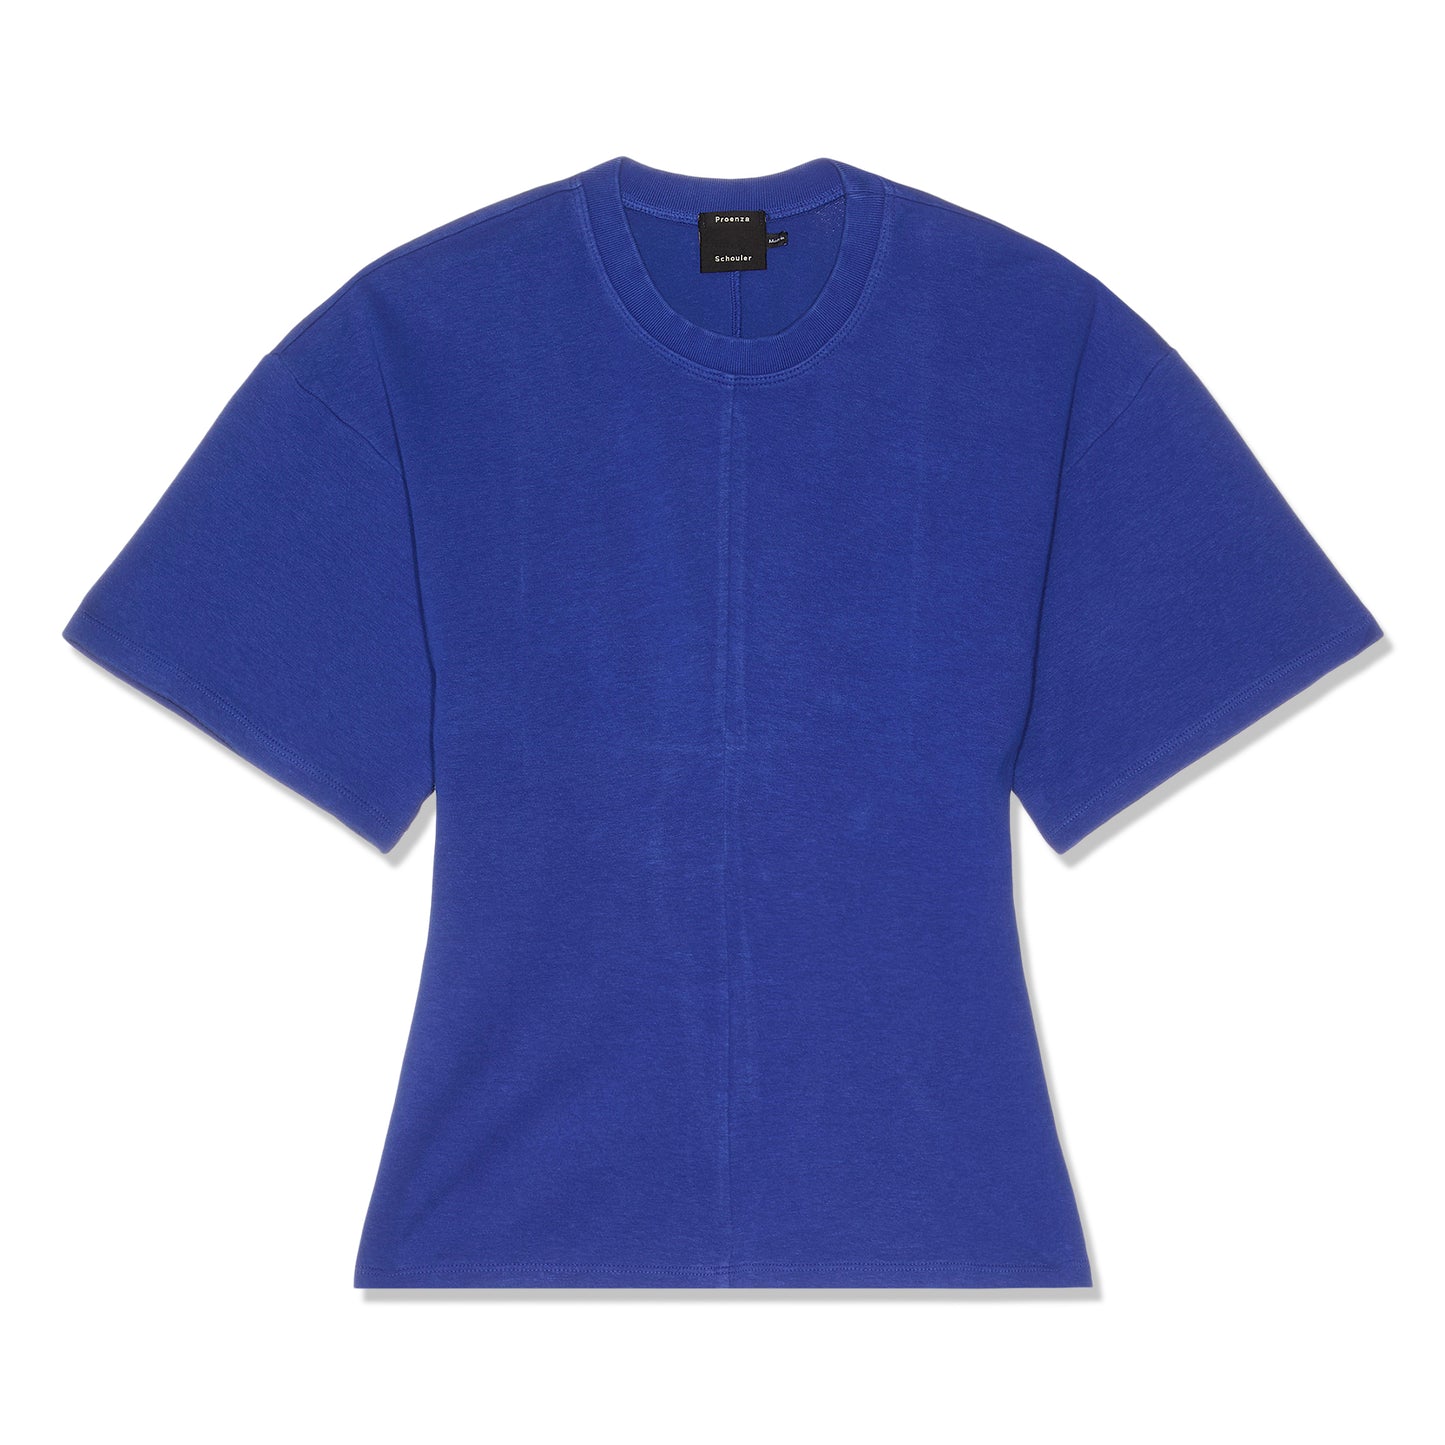 Proenza Schouler Eco Cotton Waisted T-Shirt (Cobalt)